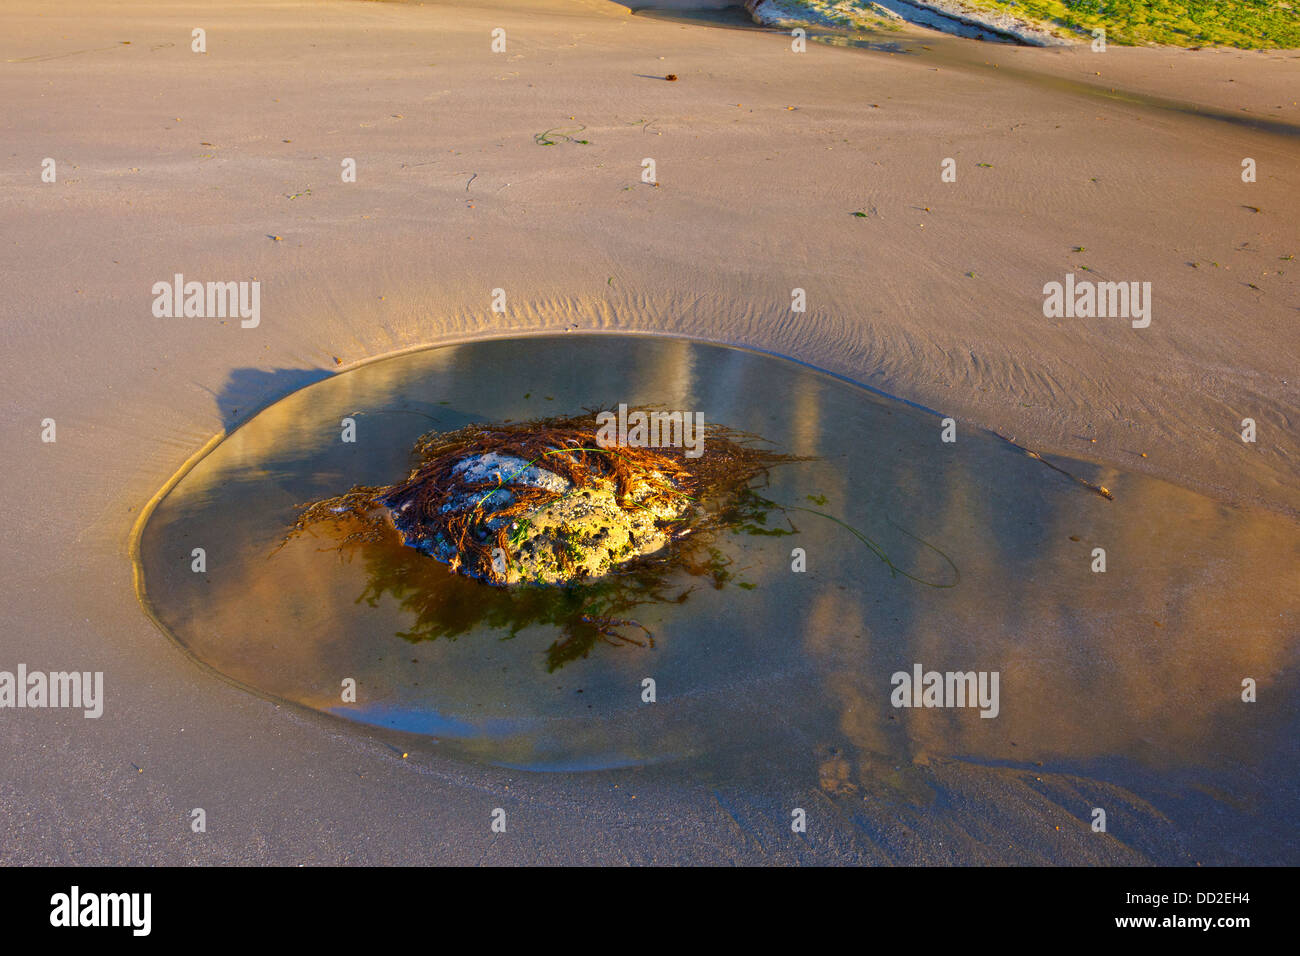 Una roccia con alghe marine seduta in una pozza d'acqua nella sabbia; Oregon, Stati Uniti d'America Foto Stock